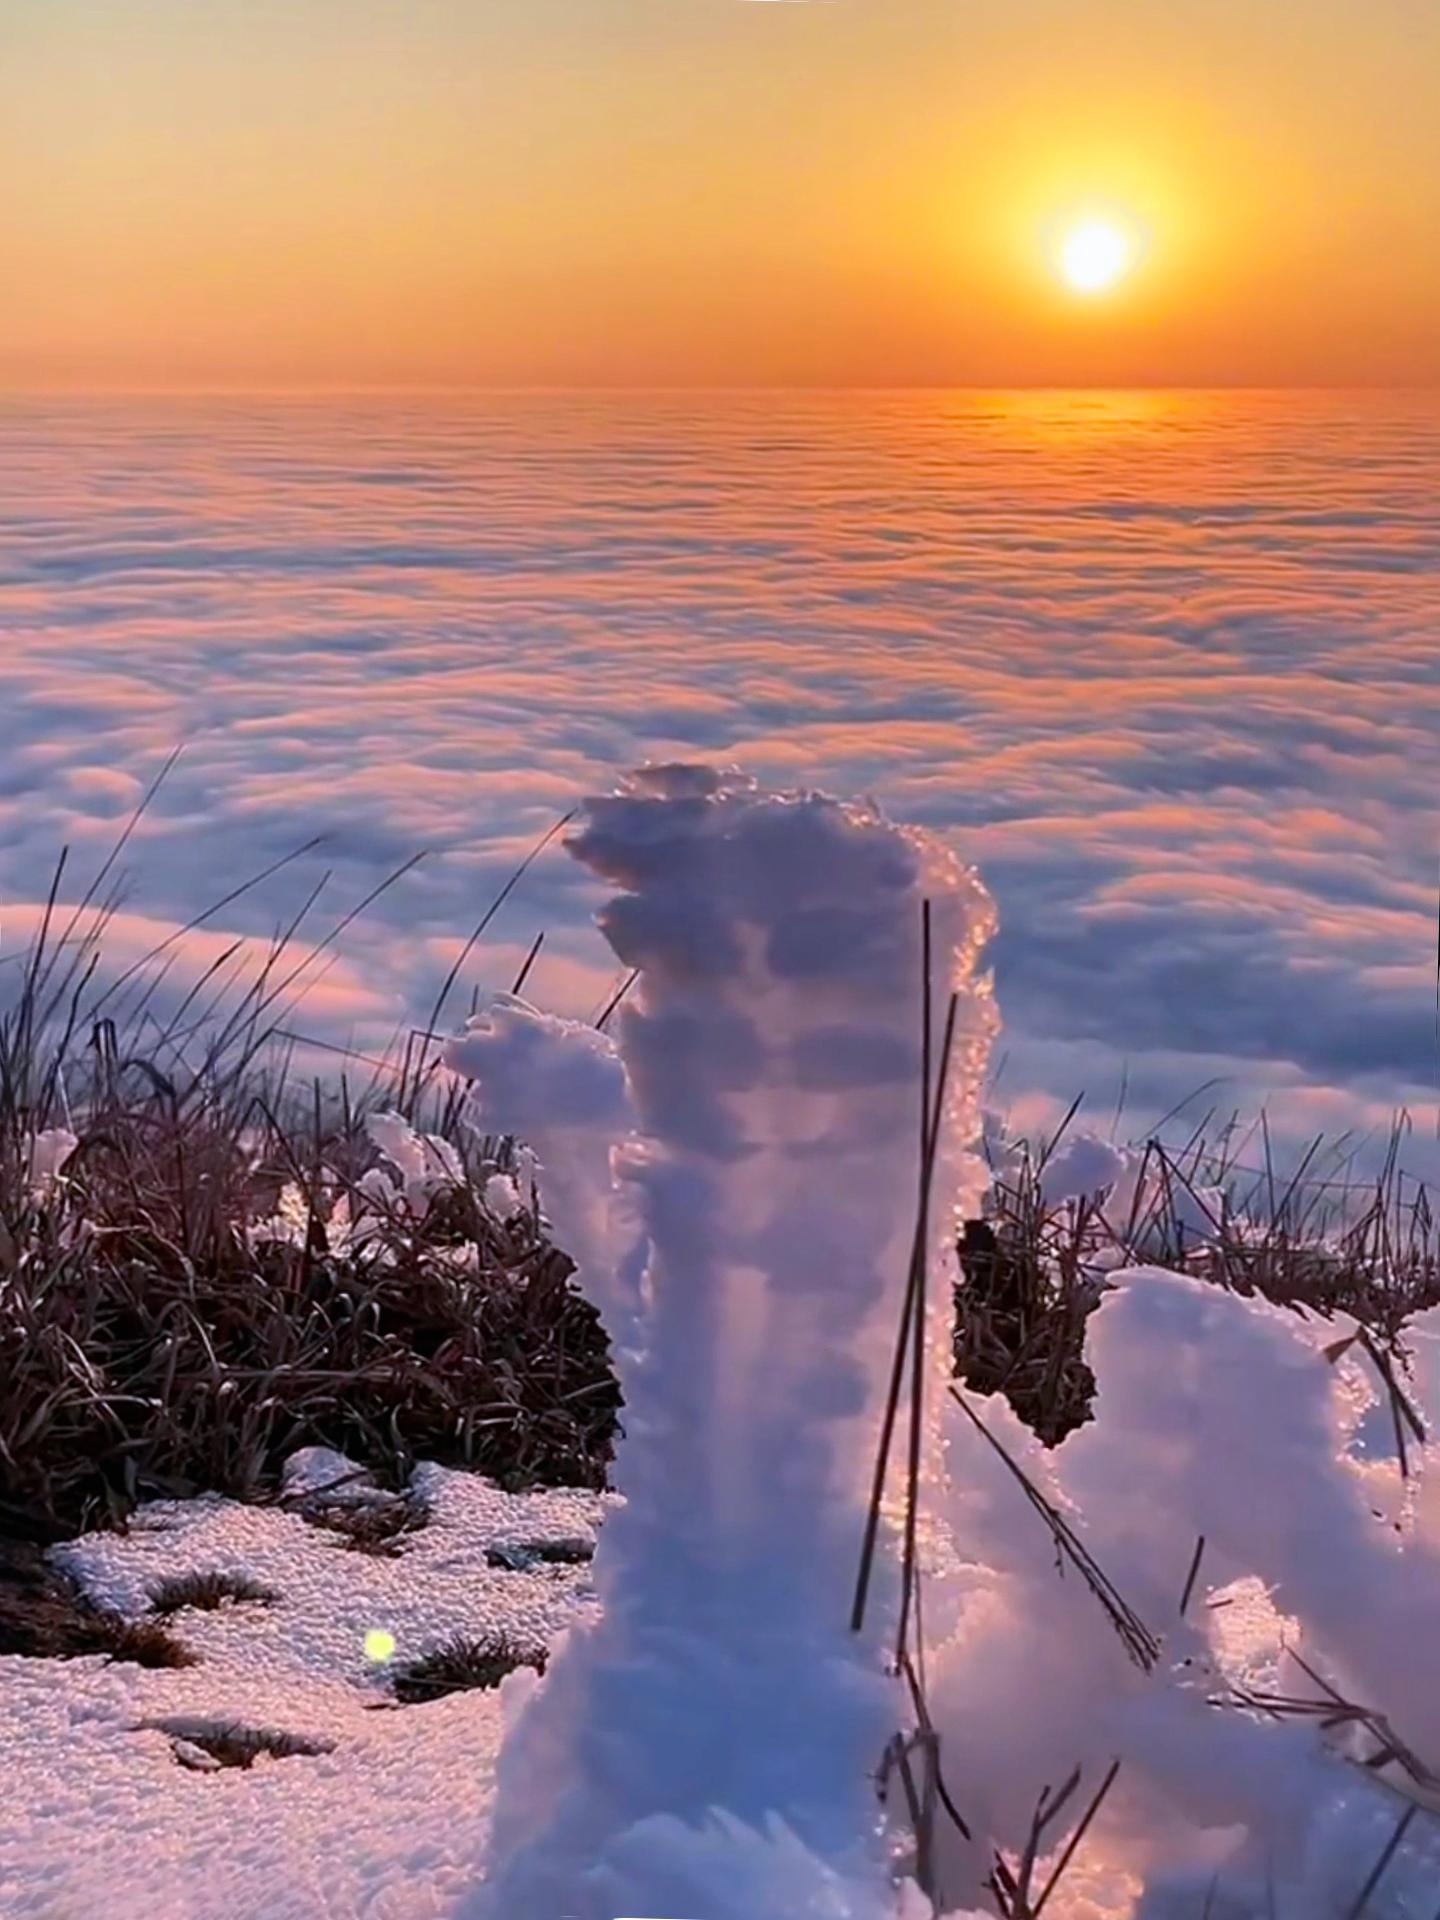 武功山:冬季最美的童话世界 武功山是一座四季皆美的山峰,但冬季的